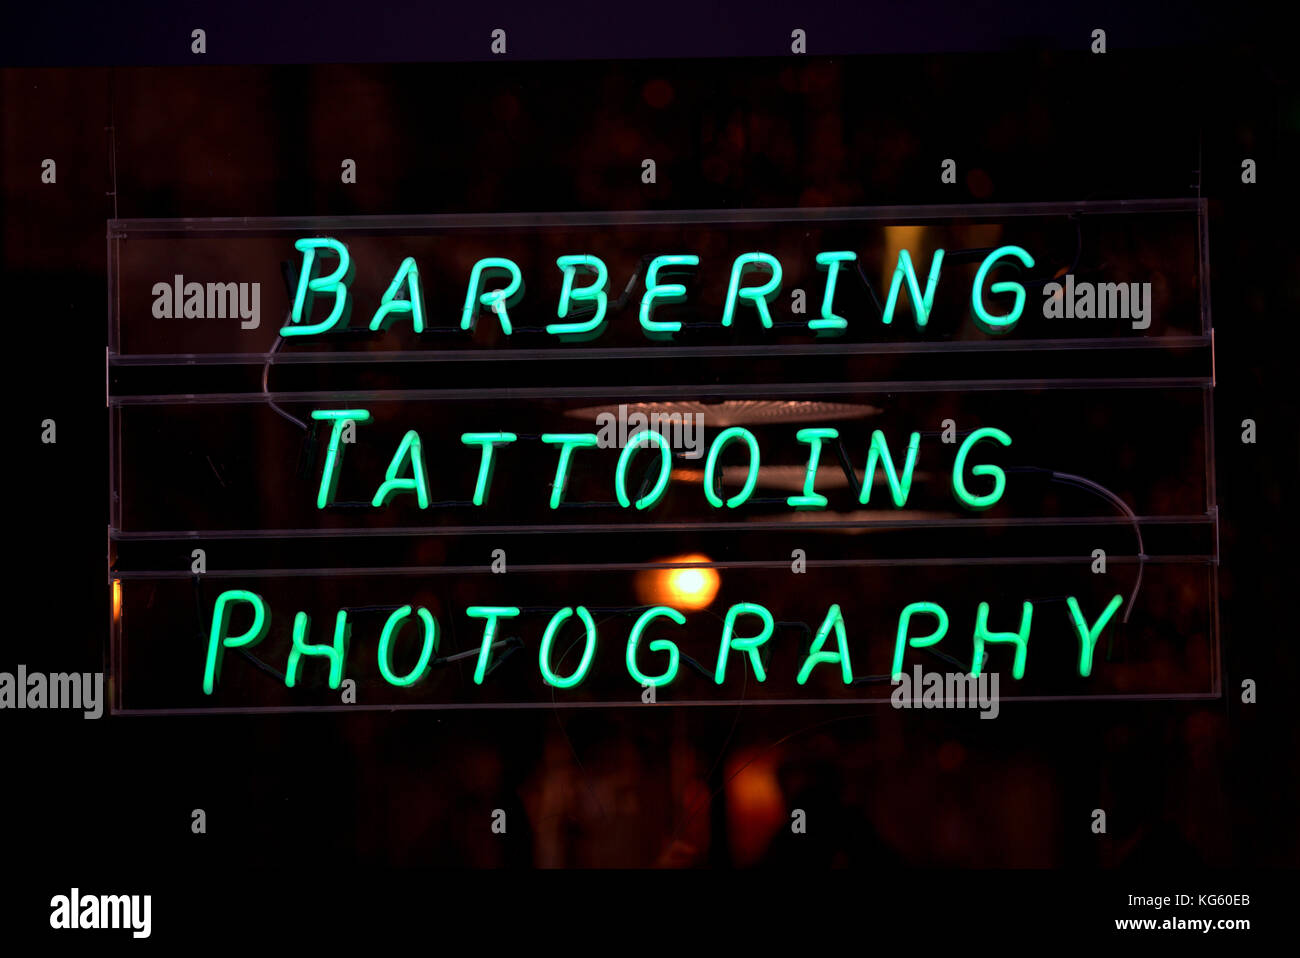 Barbering tatuaggio fotografia segno al neon vetrina fotografata da strada pubblica Foto Stock